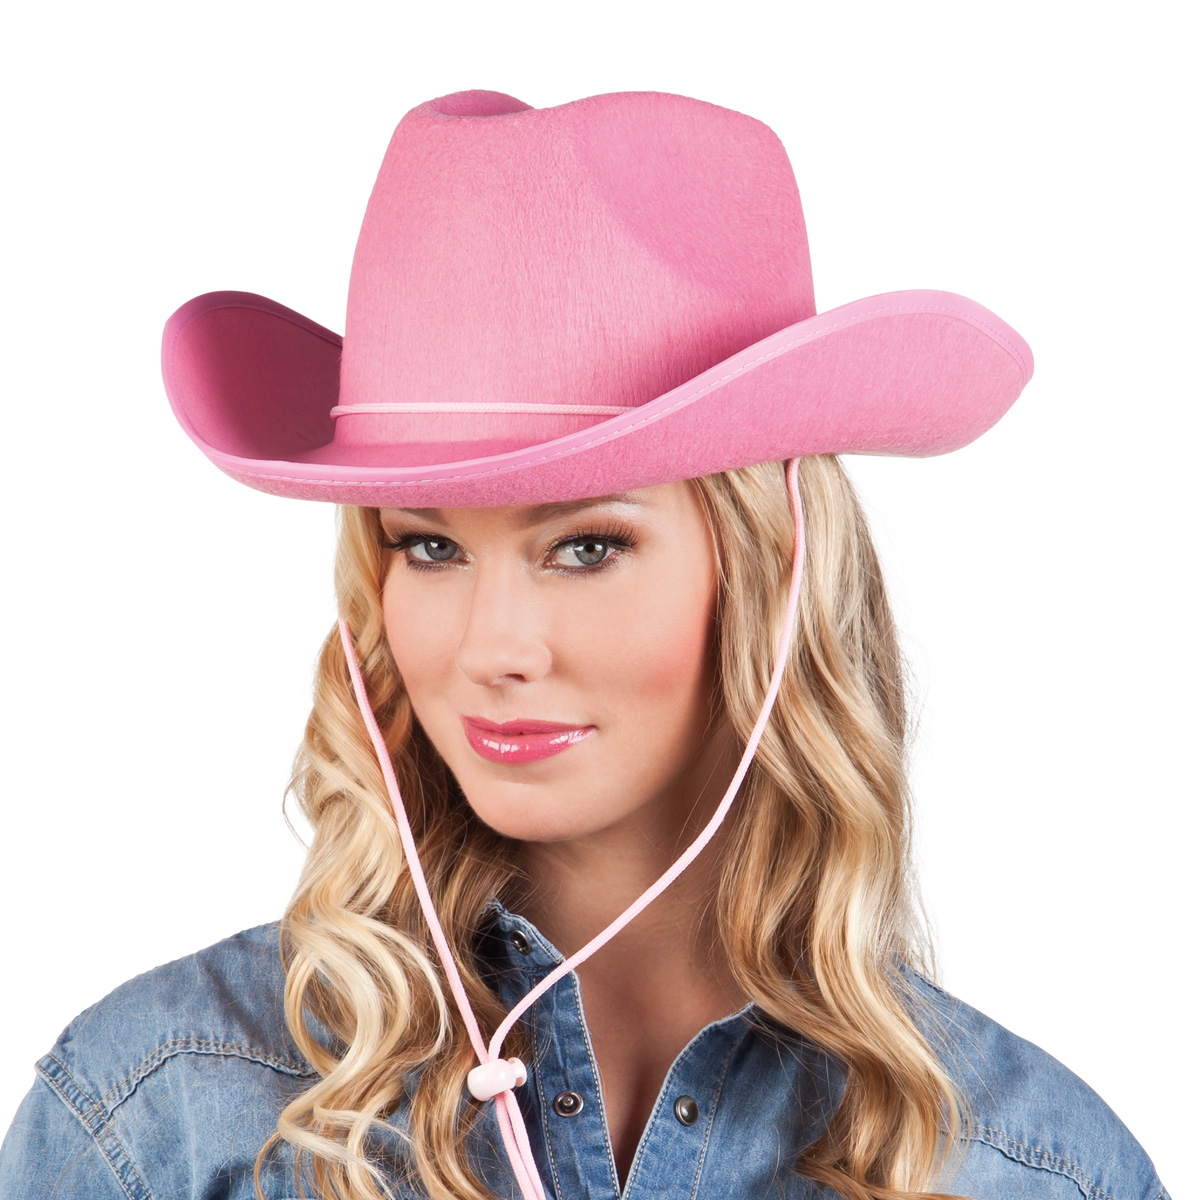 Cowboyhatt, rodeo rosaproduktzoombild #2